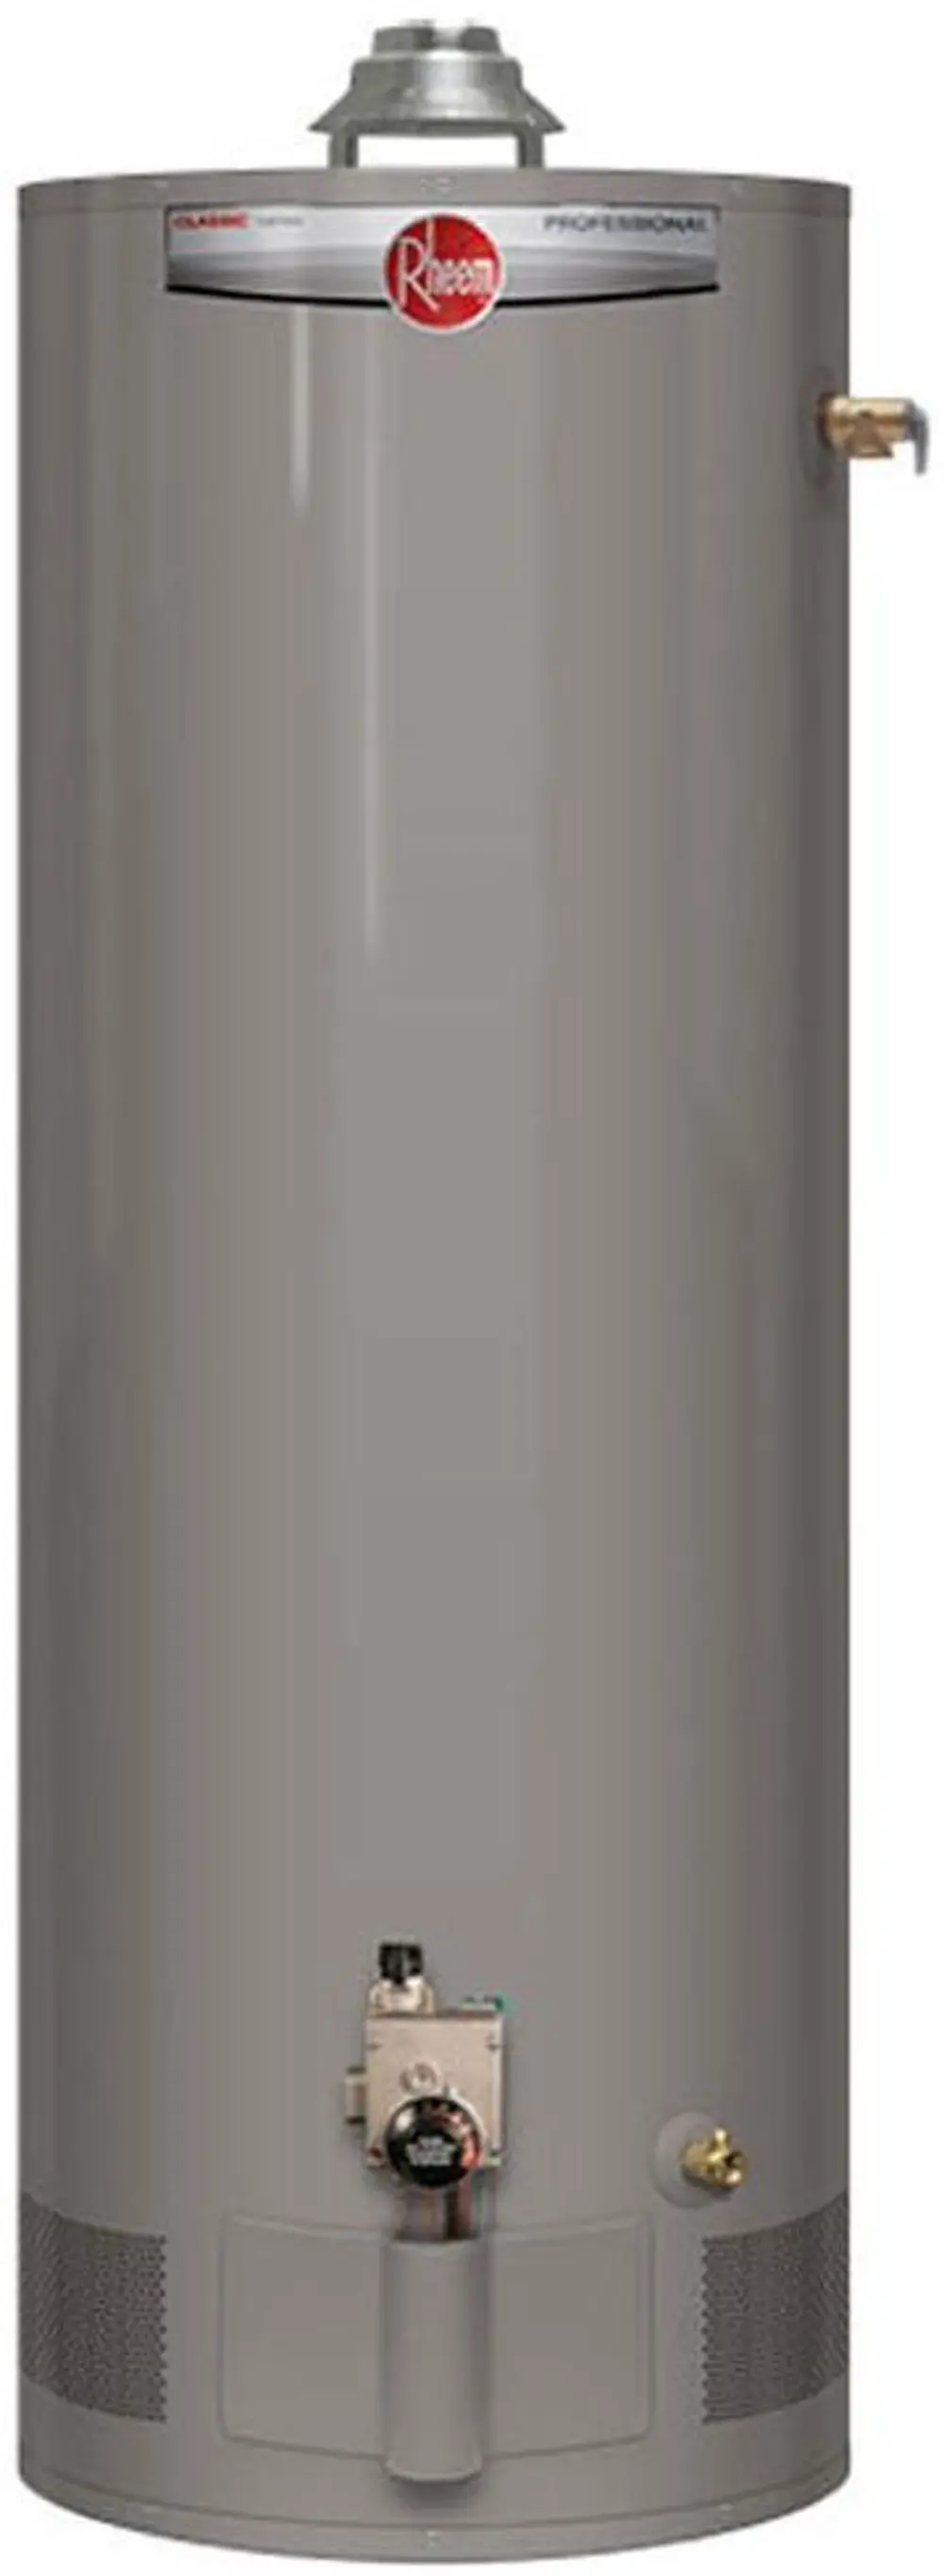 PRO+G50-40N RH62 Rheem Professional Classic 50 Gallon Gas Water Heater with 8 YR Warranty-1